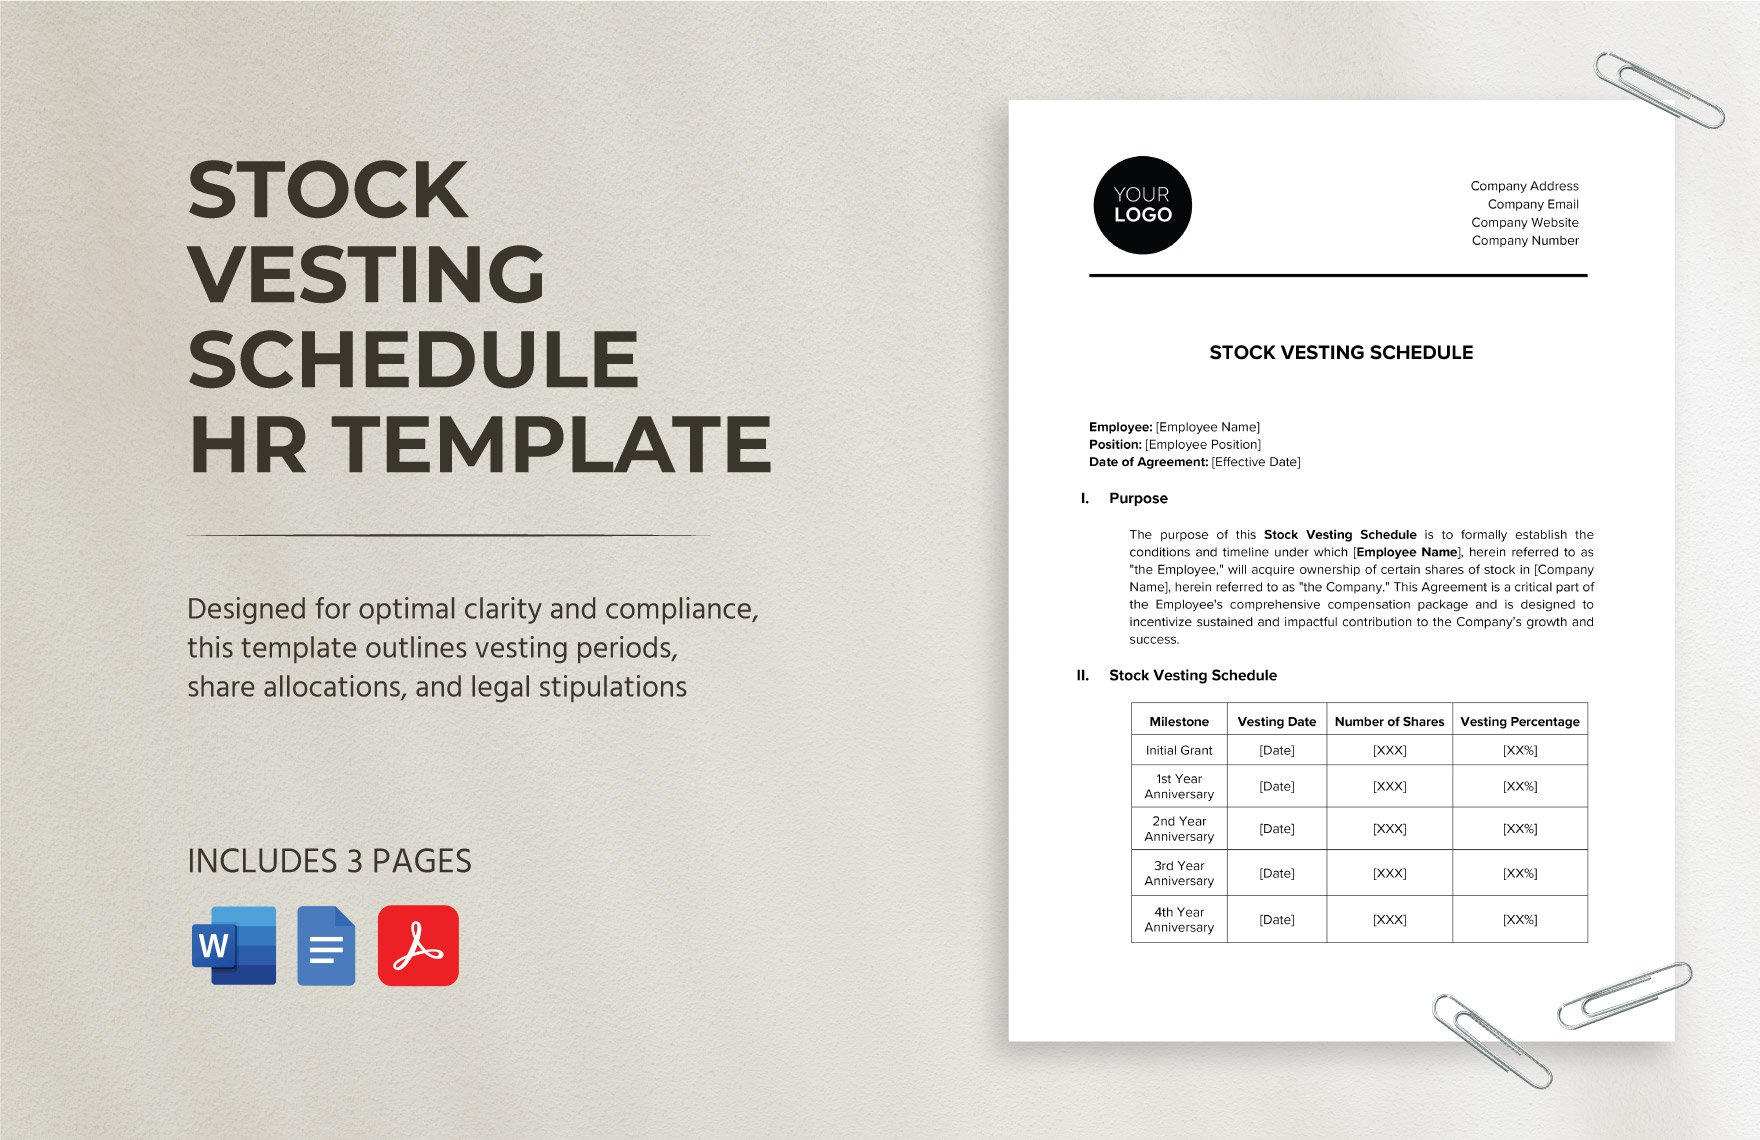 Stock Vesting Schedule HR Template